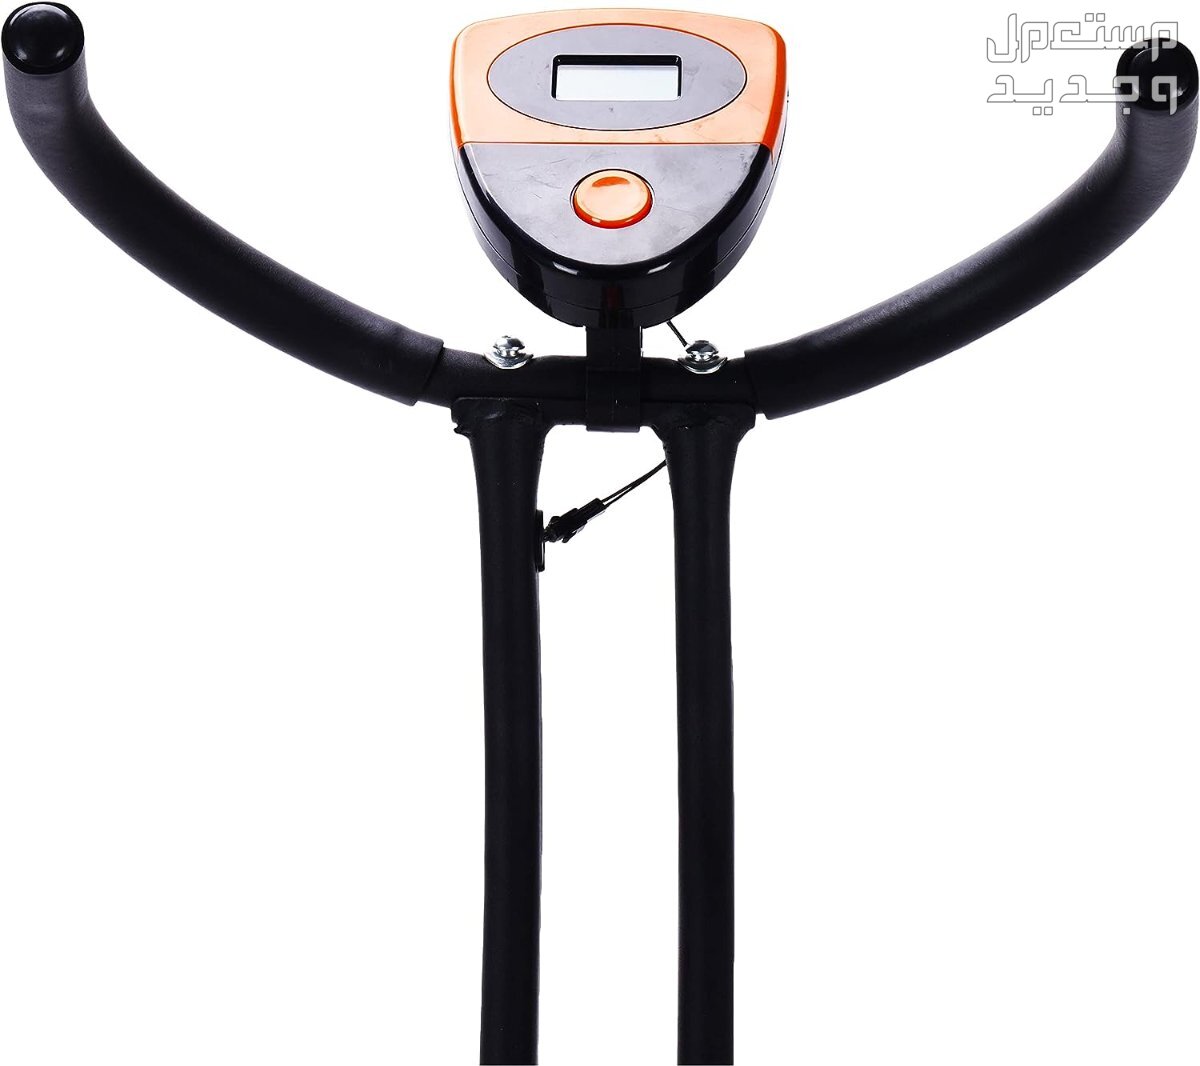 ارخص اجهزة رياضية مستعملة بالمواصفات والصور والاسعار في الإمارات العربية المتحدة جهاز ‎دراجة كارديو ‎بودي بيلدر موديل ‎38-1112-Orange